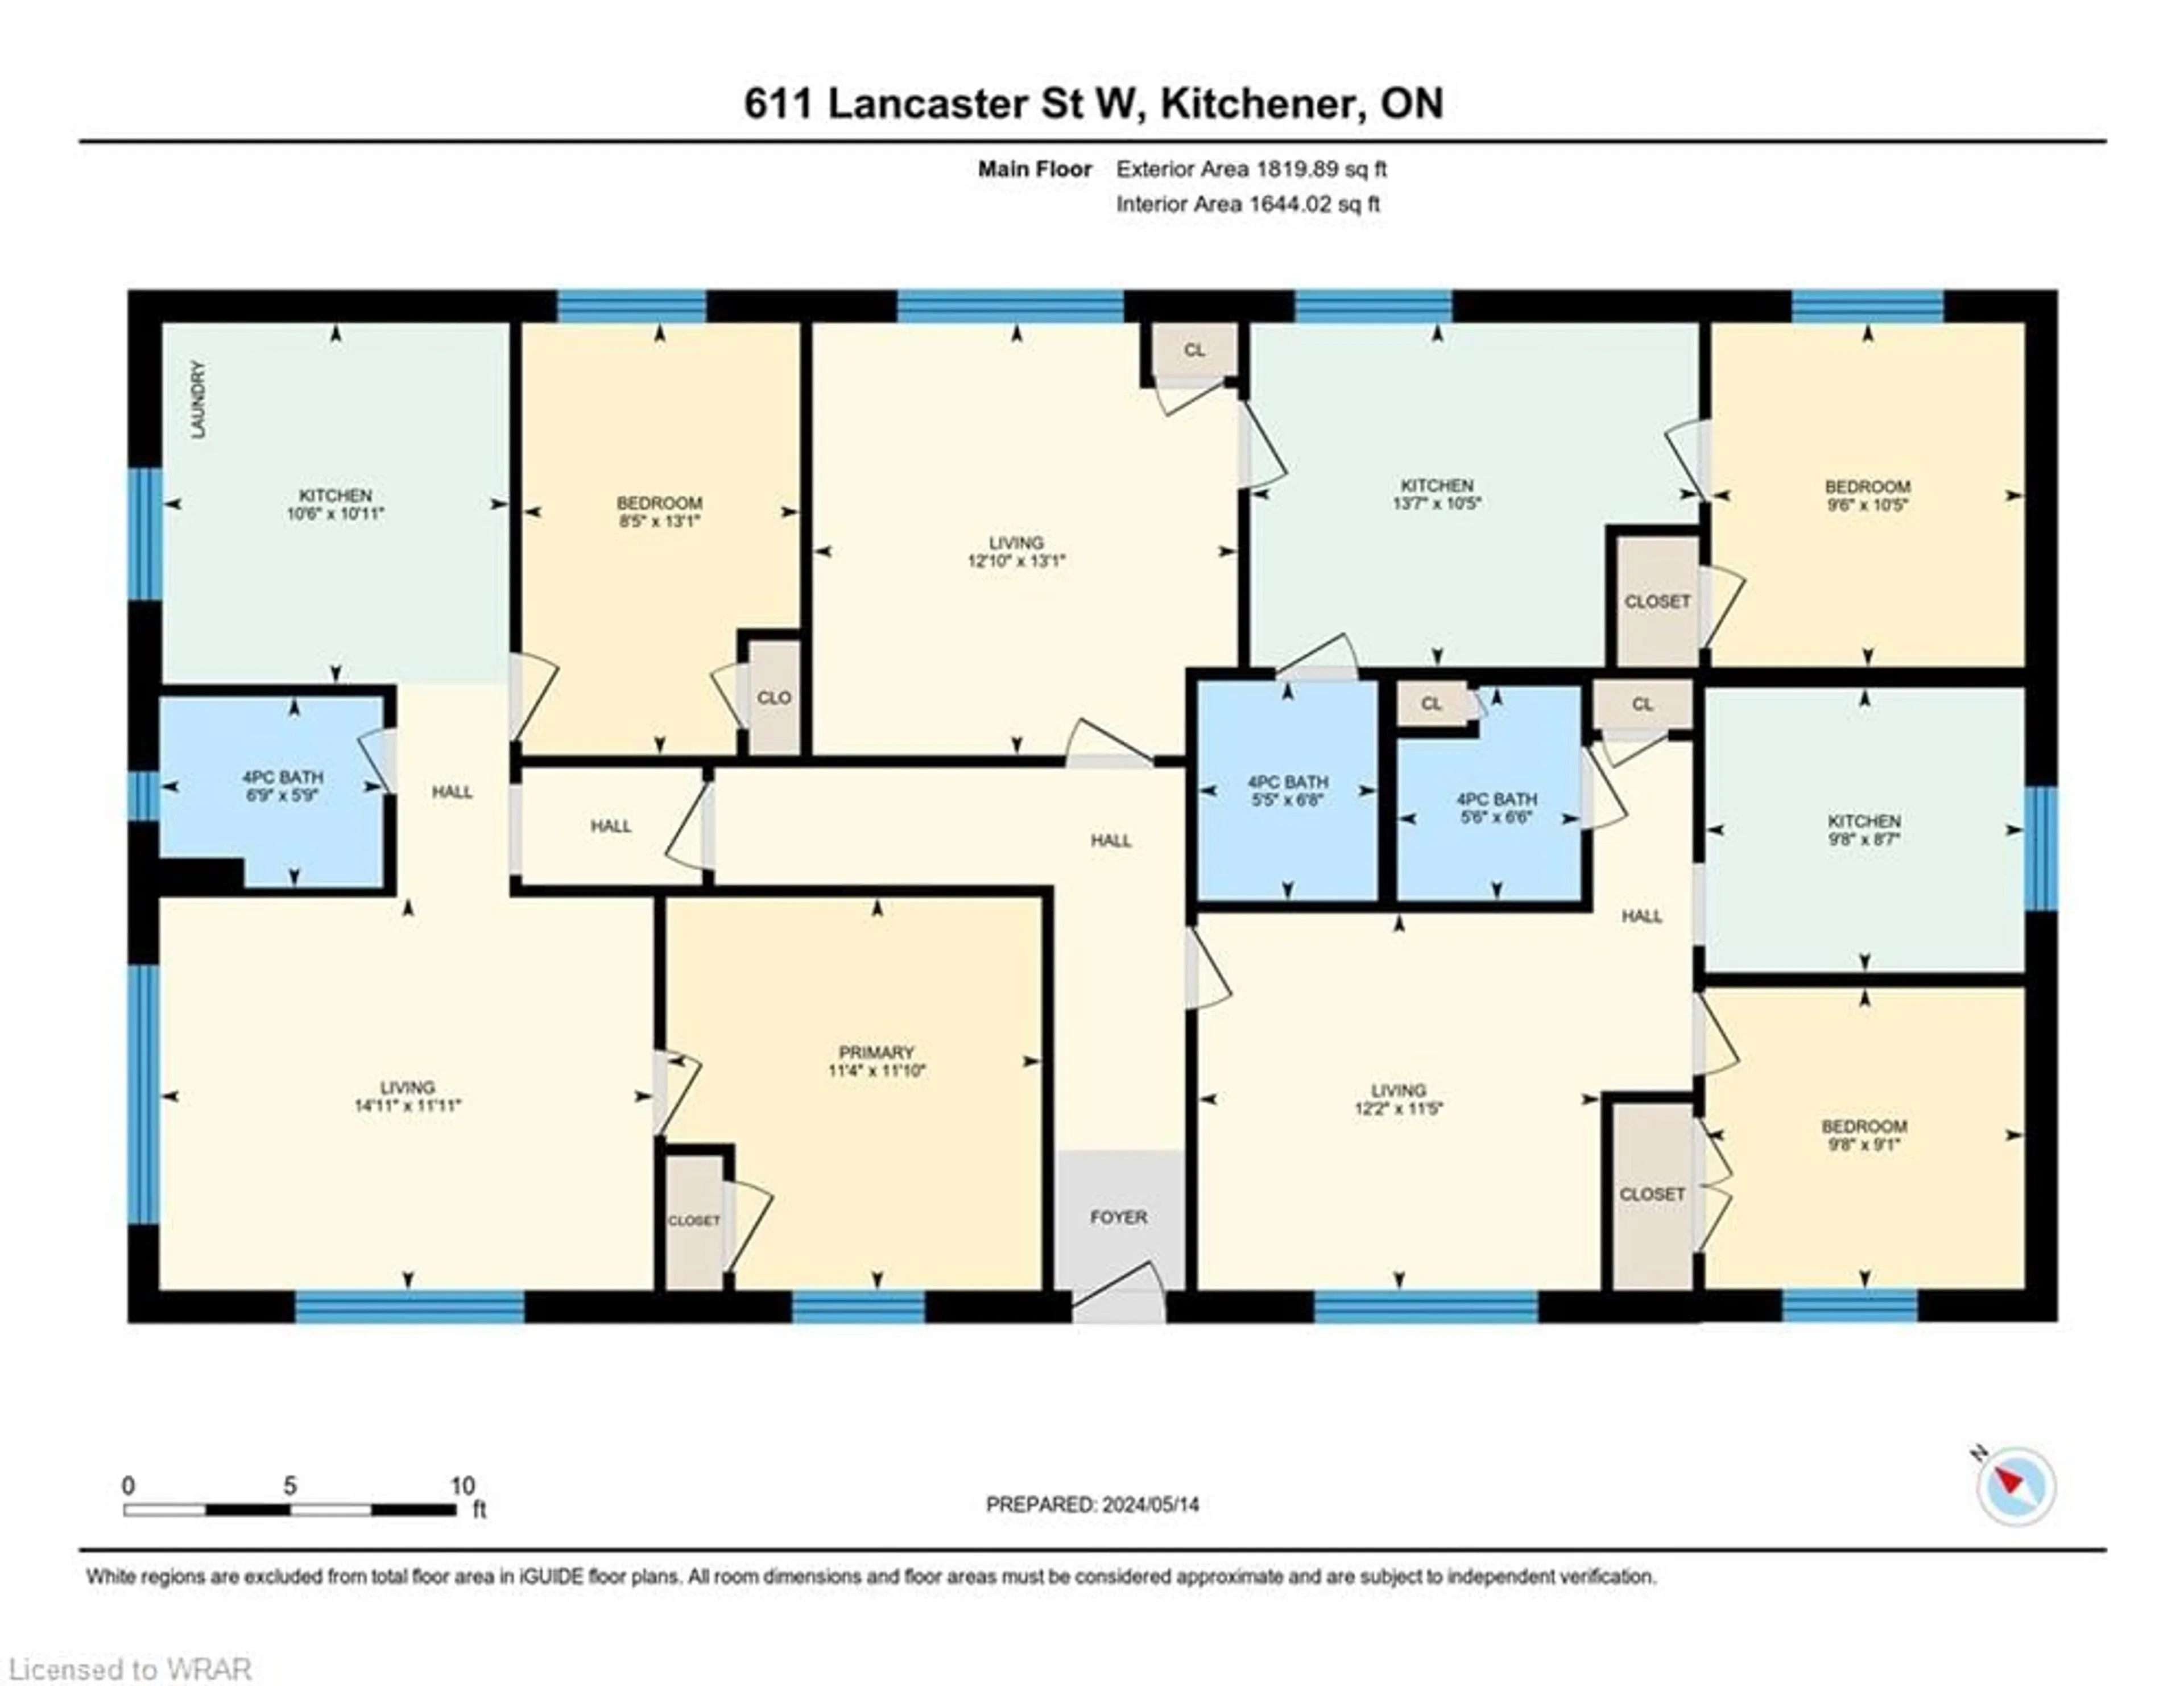 Floor plan for 611 Lancaster St, Kitchener Ontario N2K 1M5